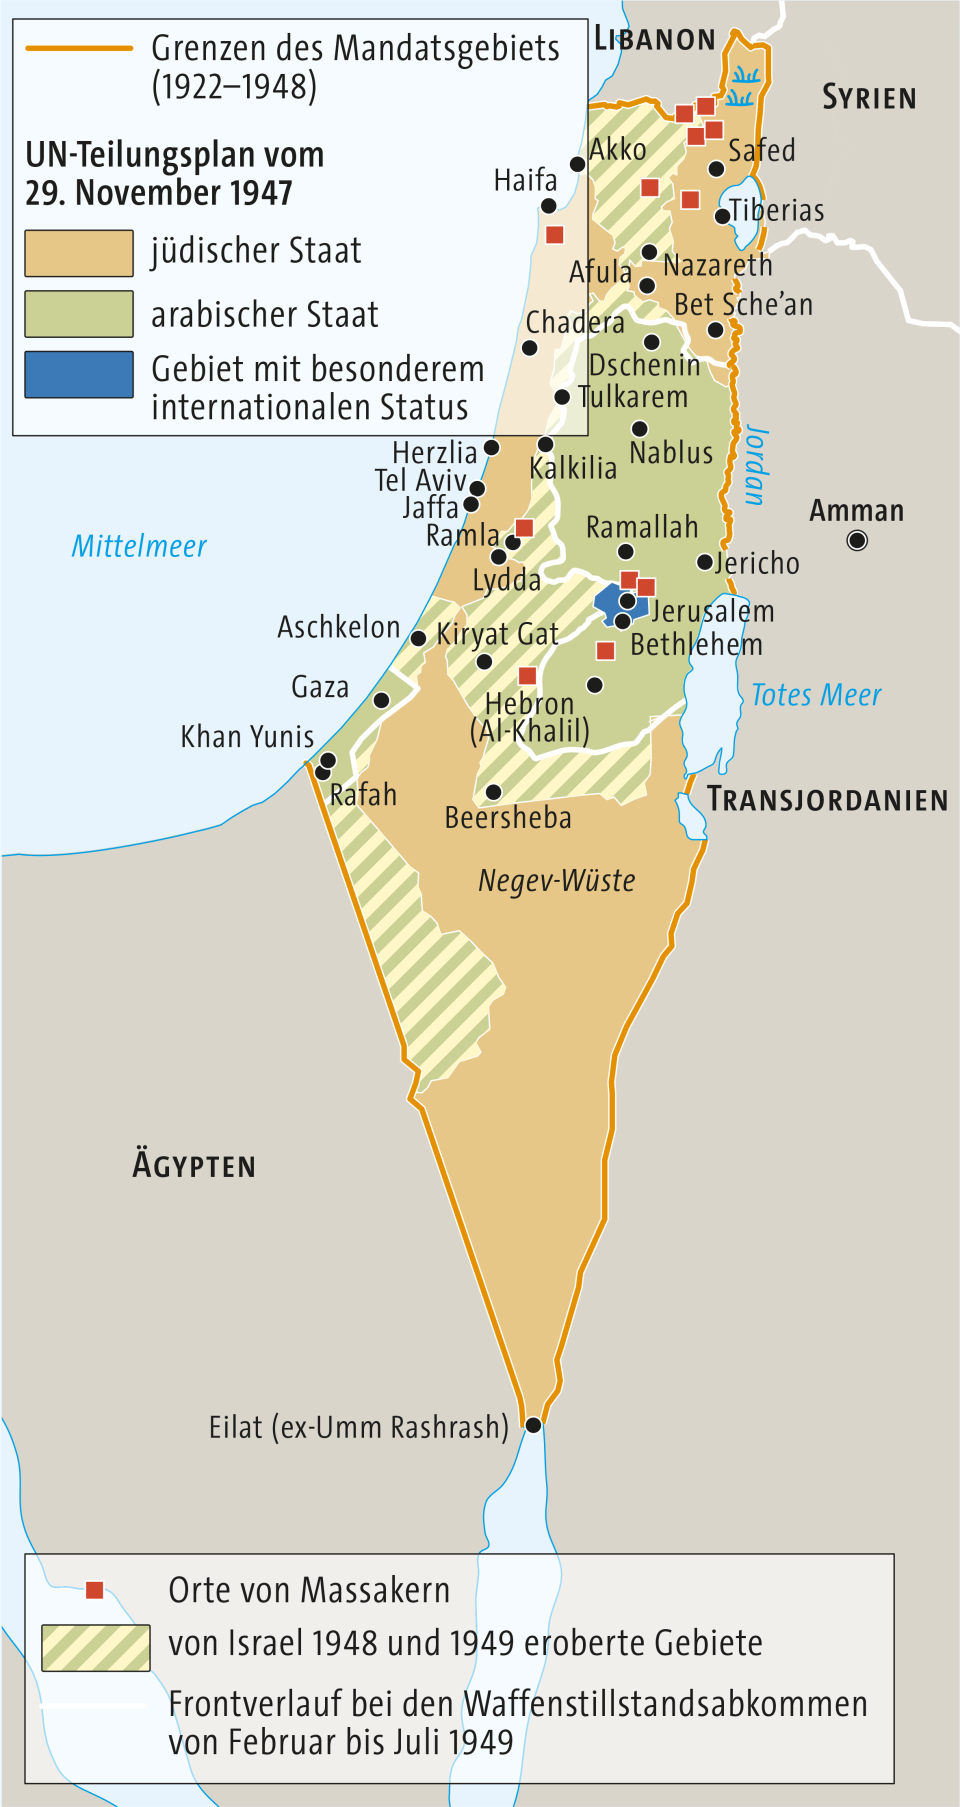 Karte von Israel/Palästina zum UN-Teilungsplan von 1947